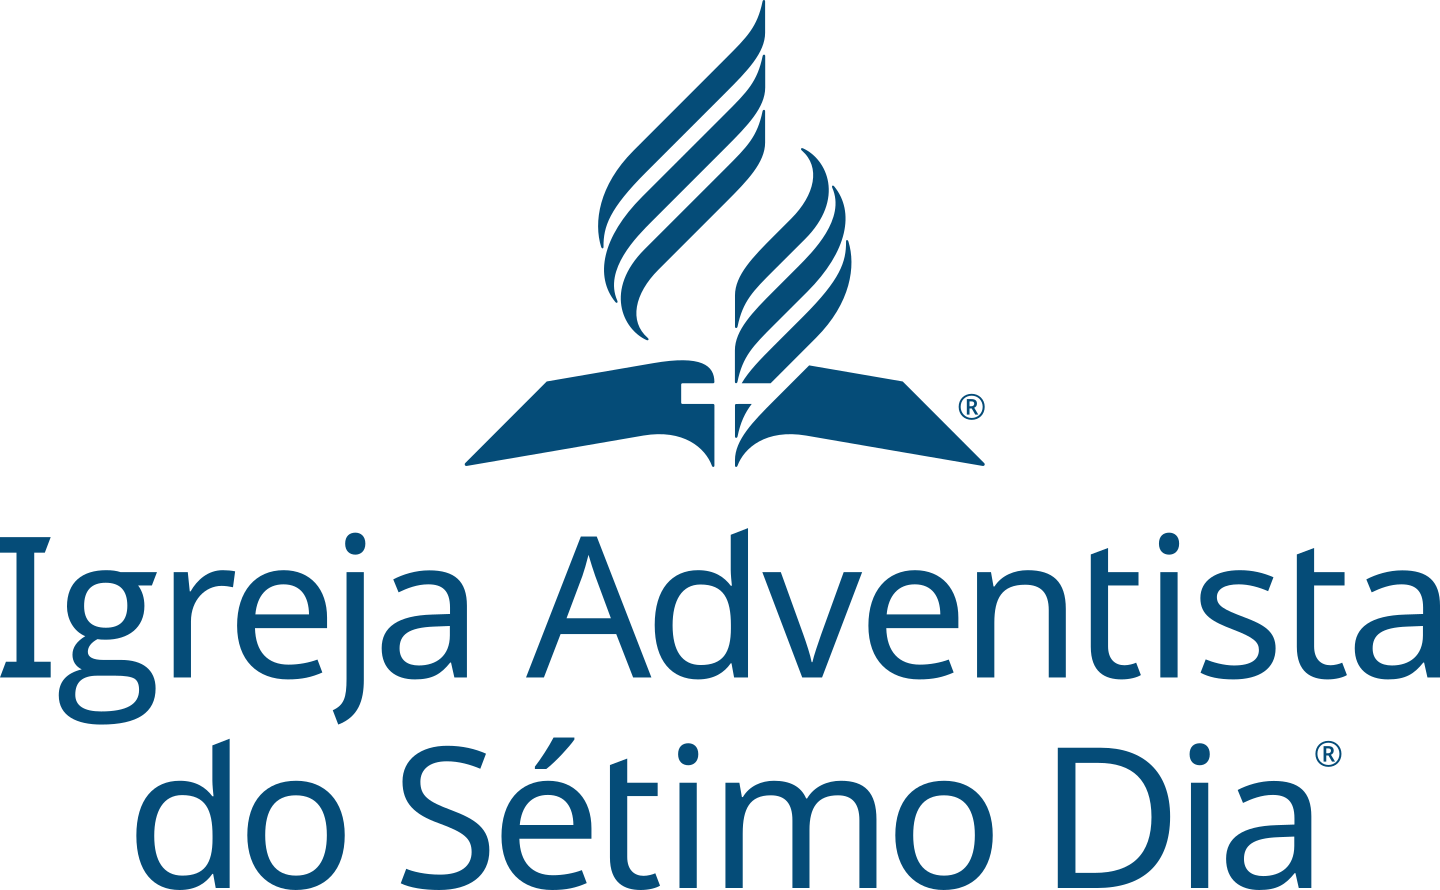 Igreja Adventista do Sétimo Dia Logo.